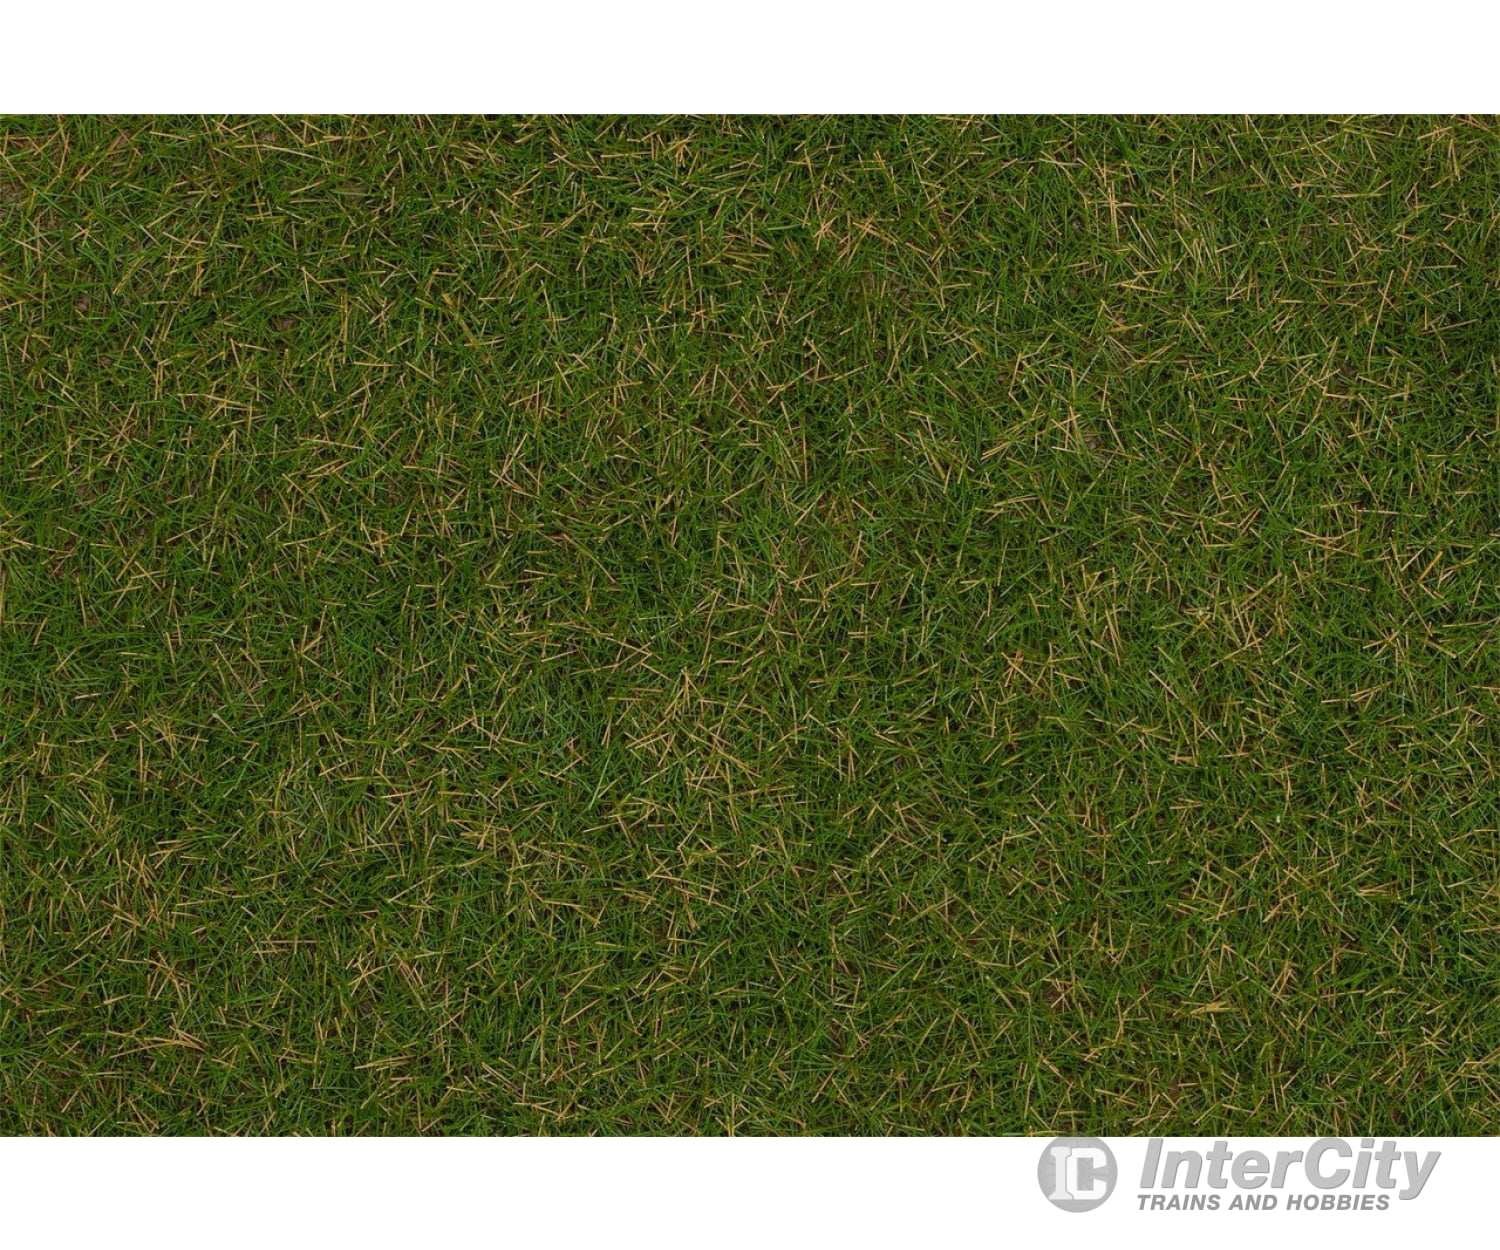 Faller 170232 H0 Tt N Wild Grass Ground Cover Fibres Summer Lawn 4 Mm 80 G Static Grass &